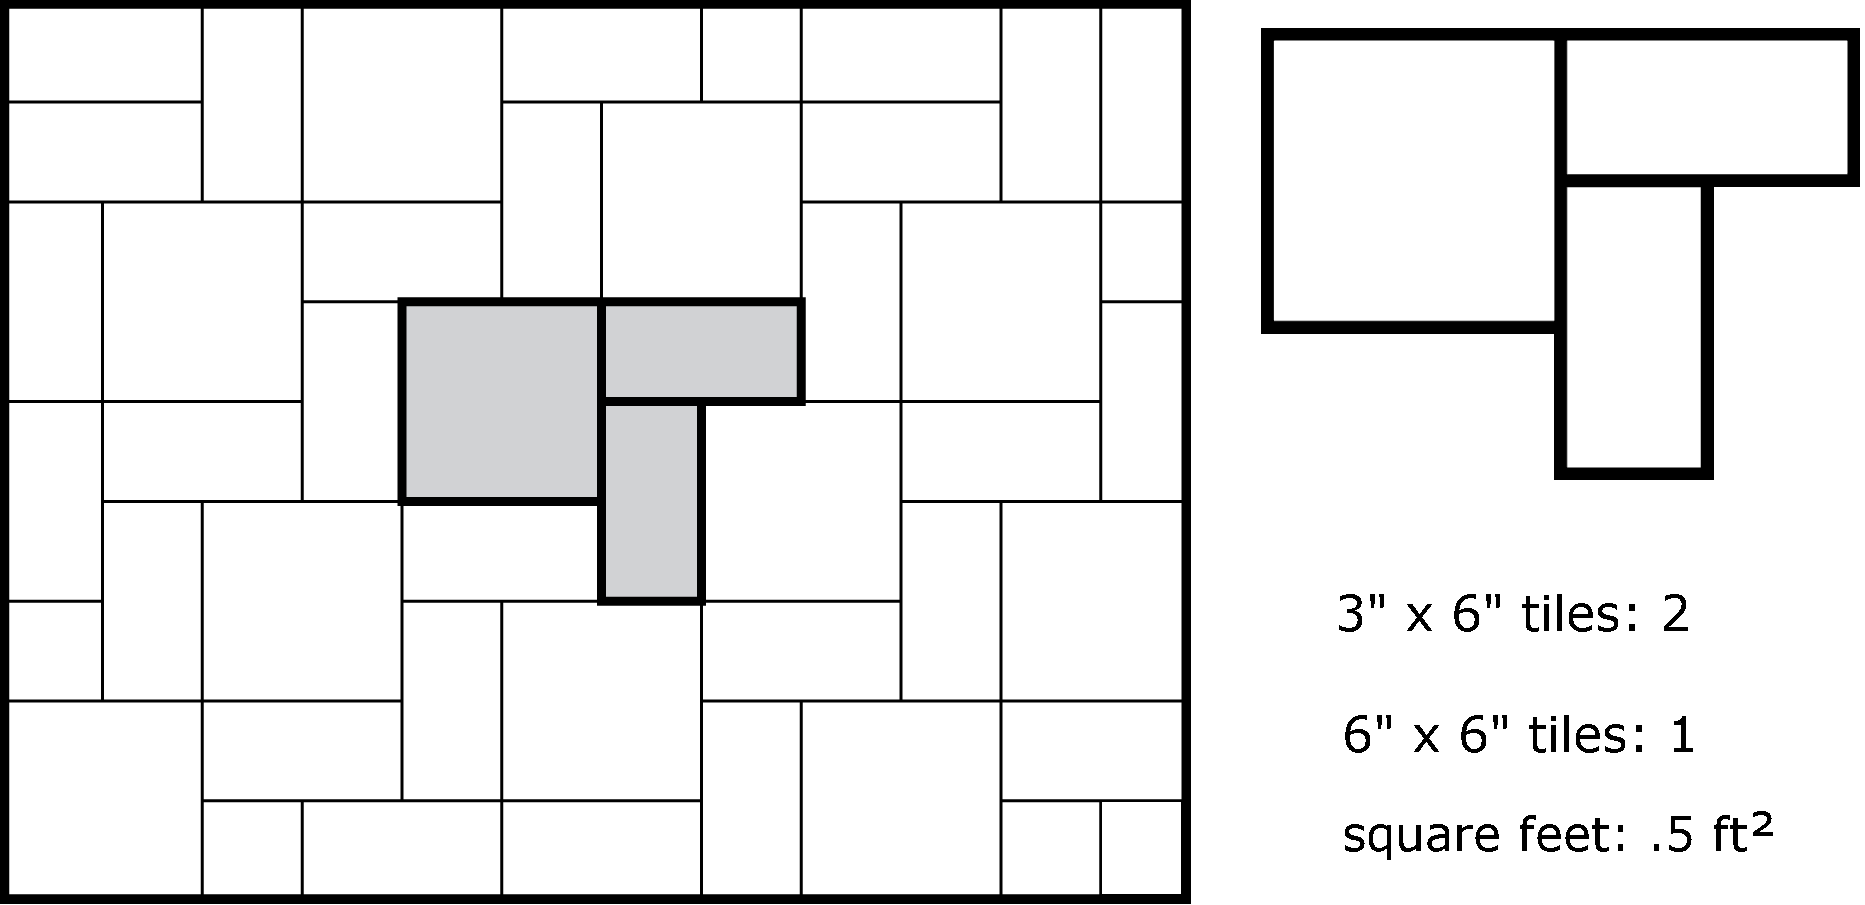 Tile Calculator Estimate Much, Tile Layout Calculator